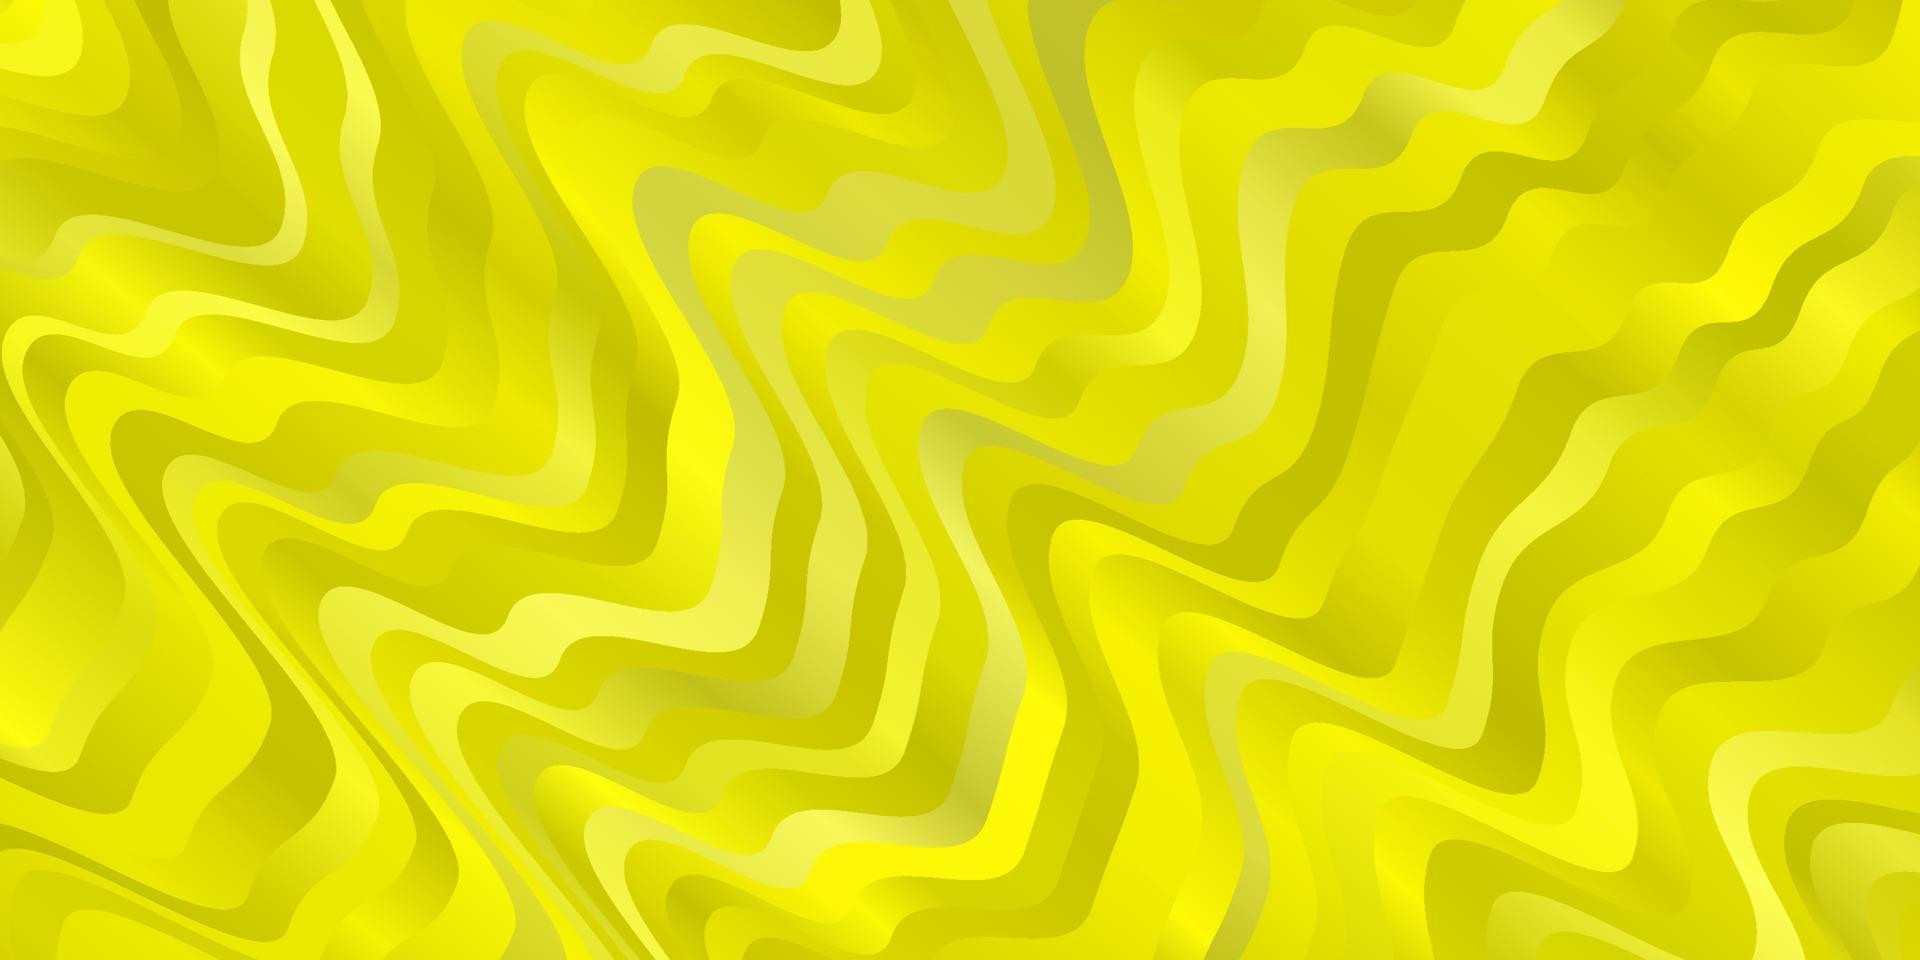 sfondo vettoriale giallo chiaro con curve.